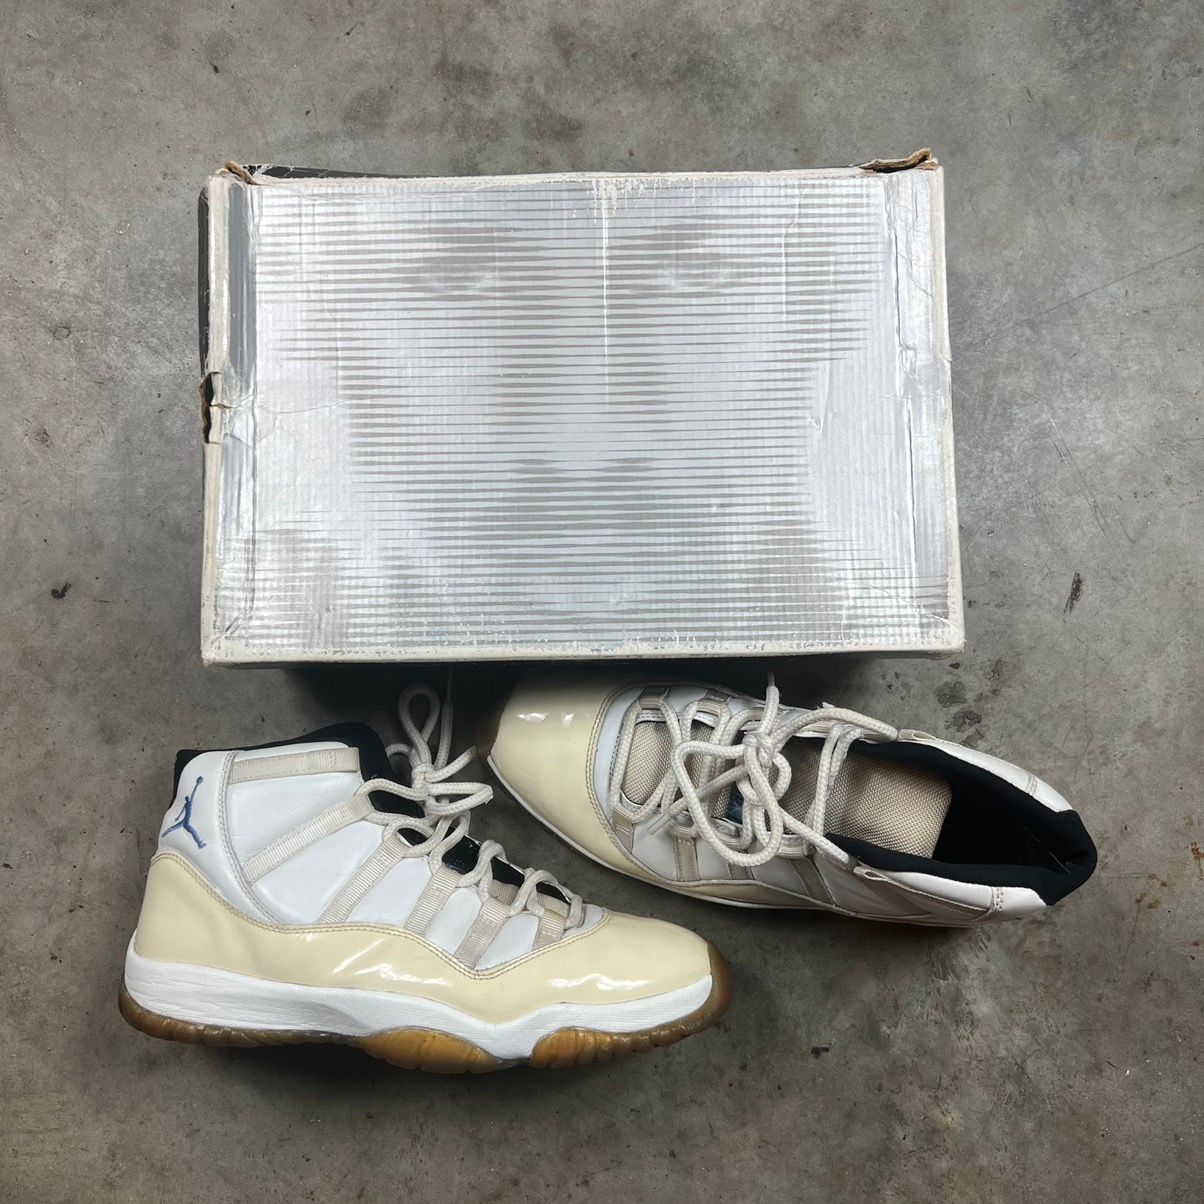 Pre-owned Jordan Nike Jordan 11 Retro Columbia (2001) Shoes In White